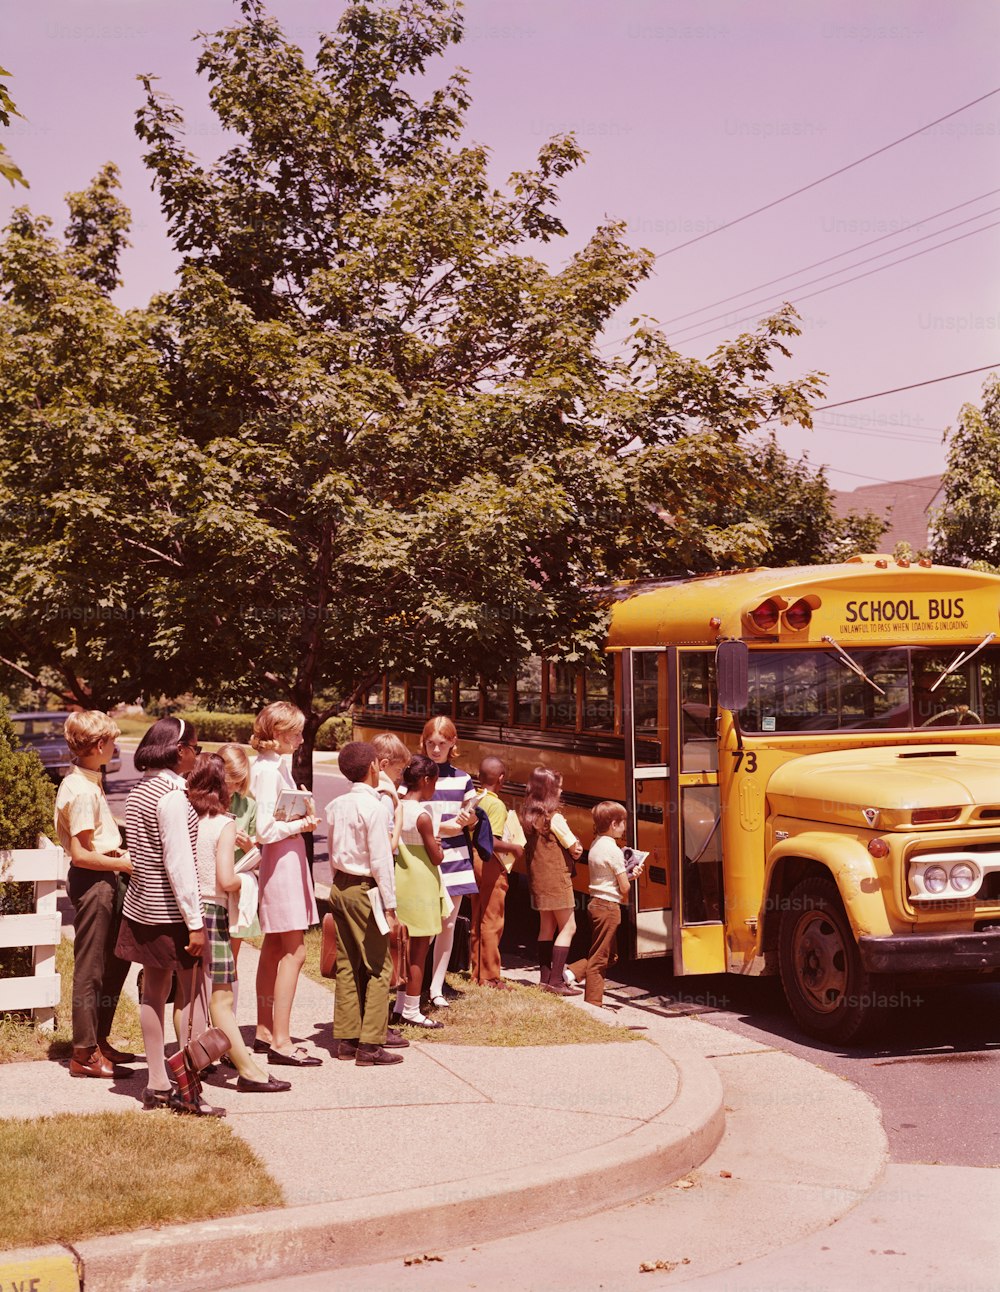 ESTADOS UNIDOS - POR VOLTA DE 1970: Estudantes na fila, esperando para embarcar no ônibus escolar.